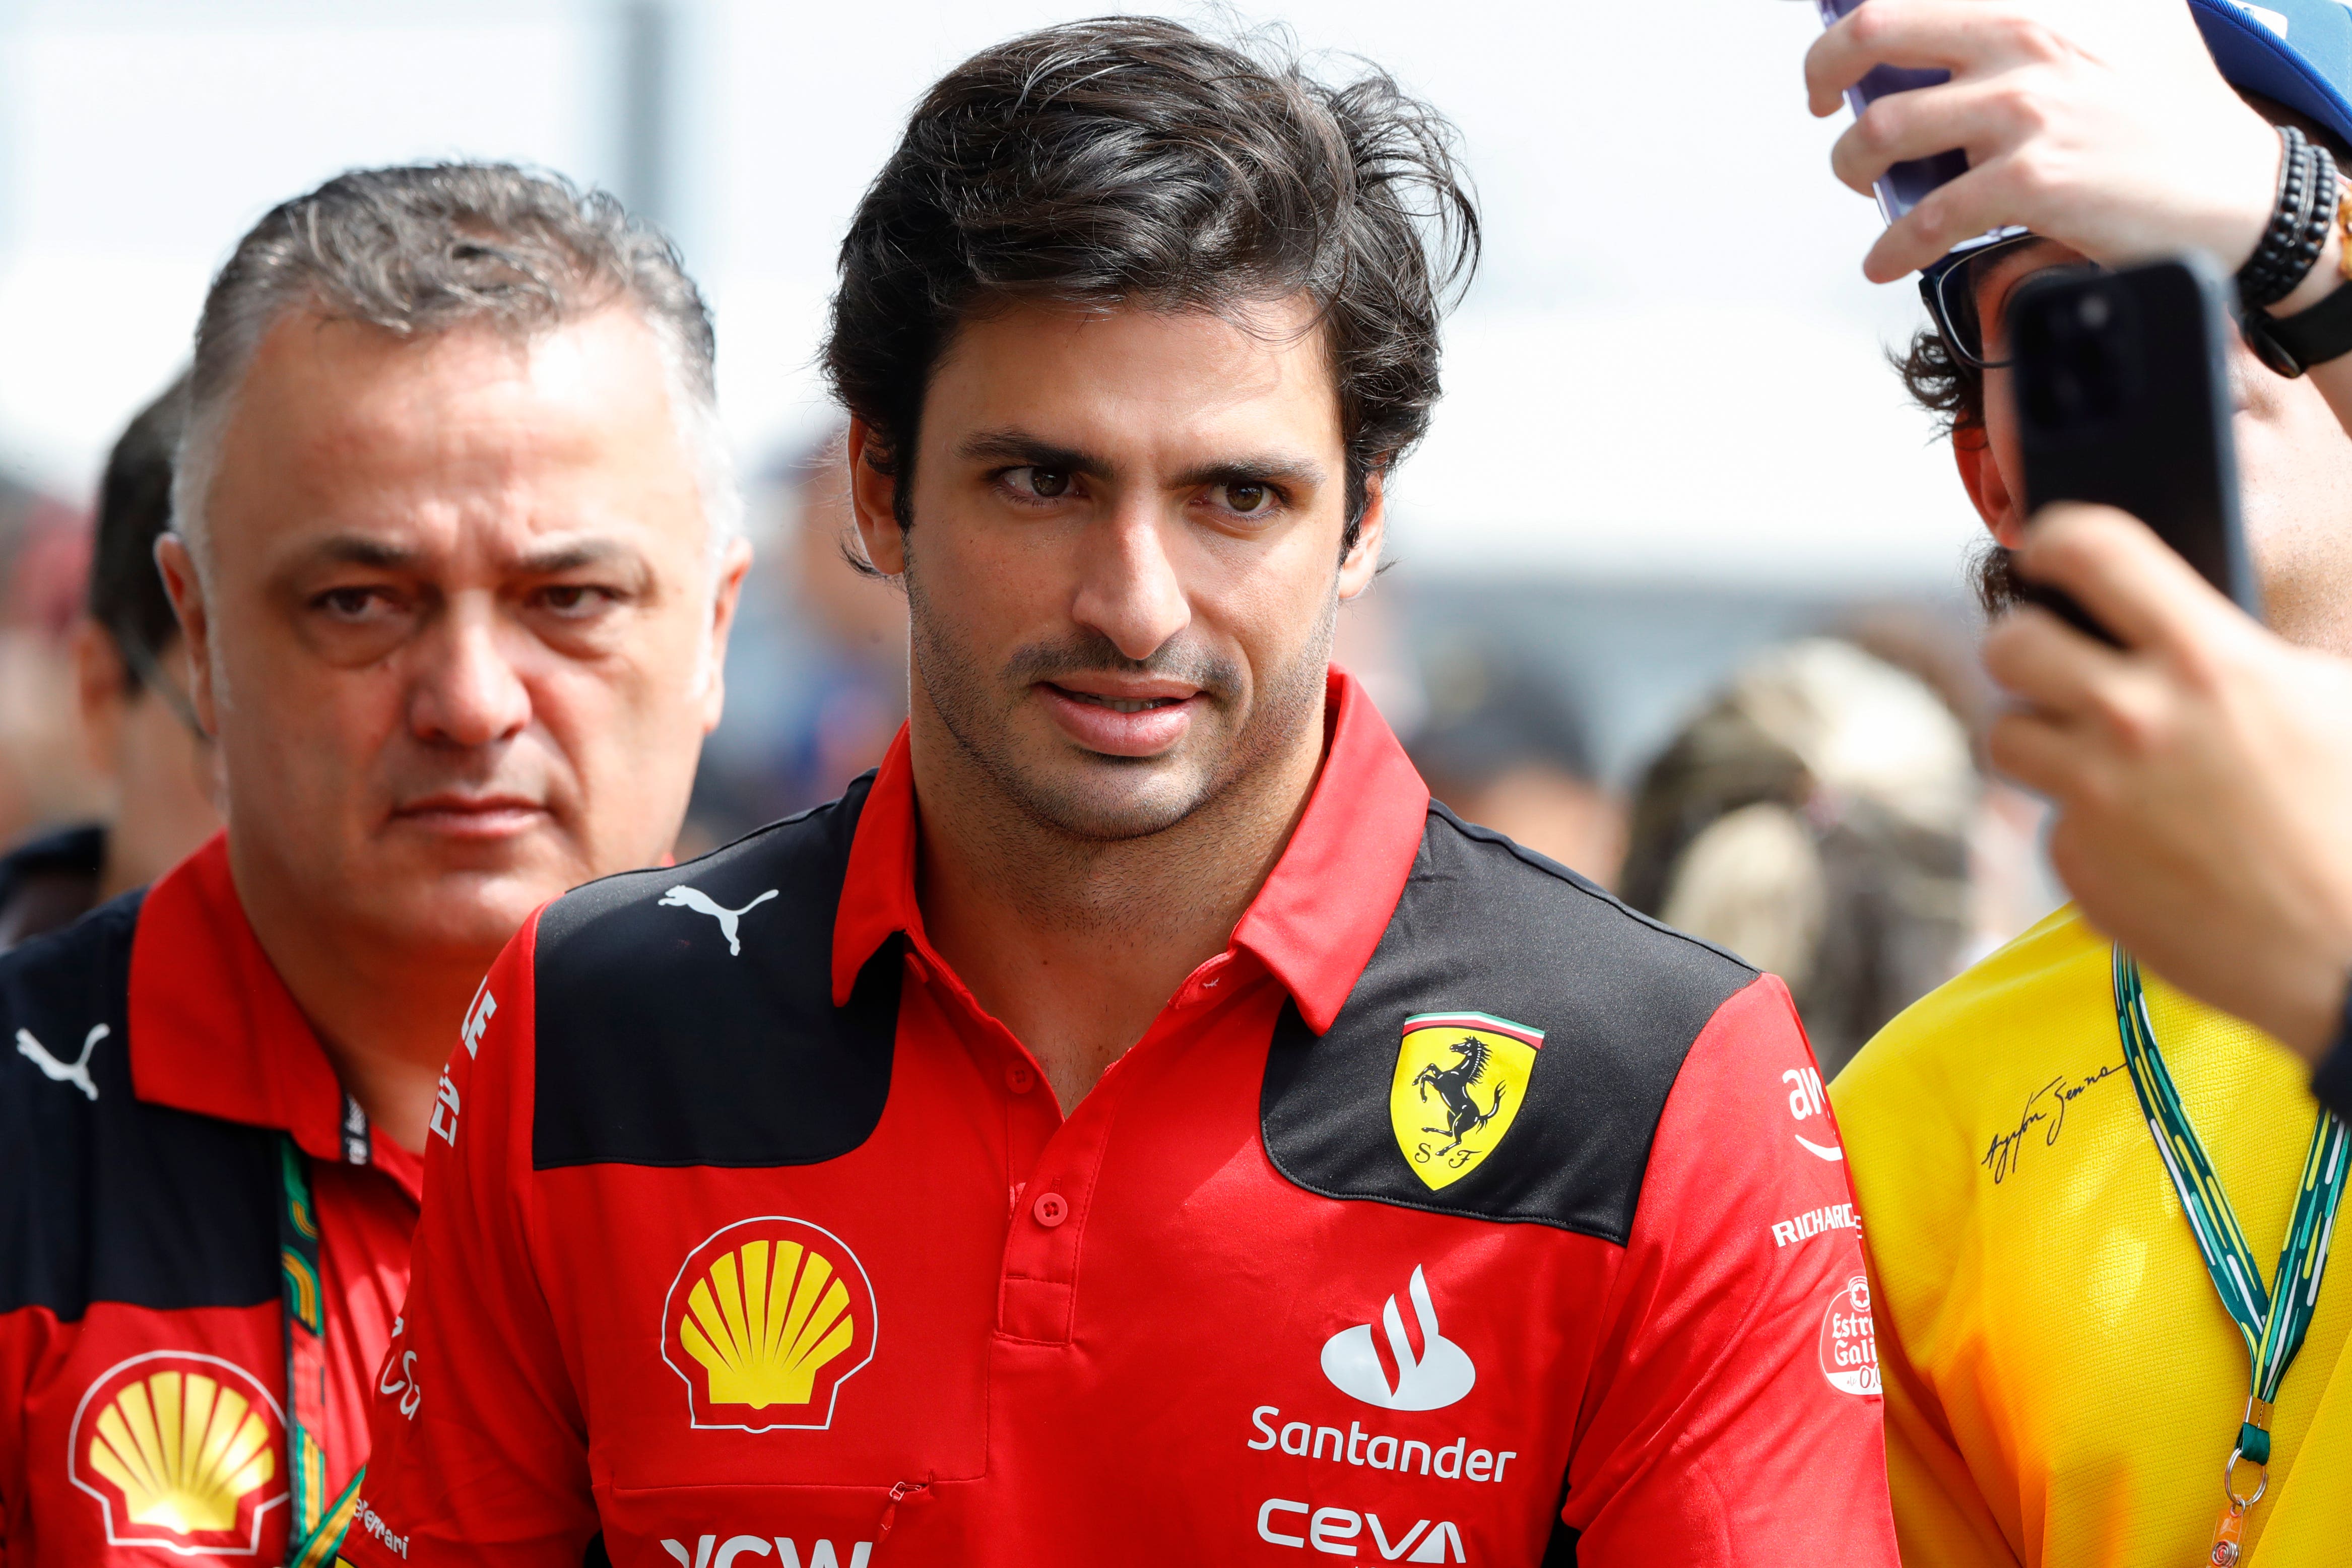 Ferrari driver Carlos Sainz finished fastest in practice (Marcelo Chello/AP)